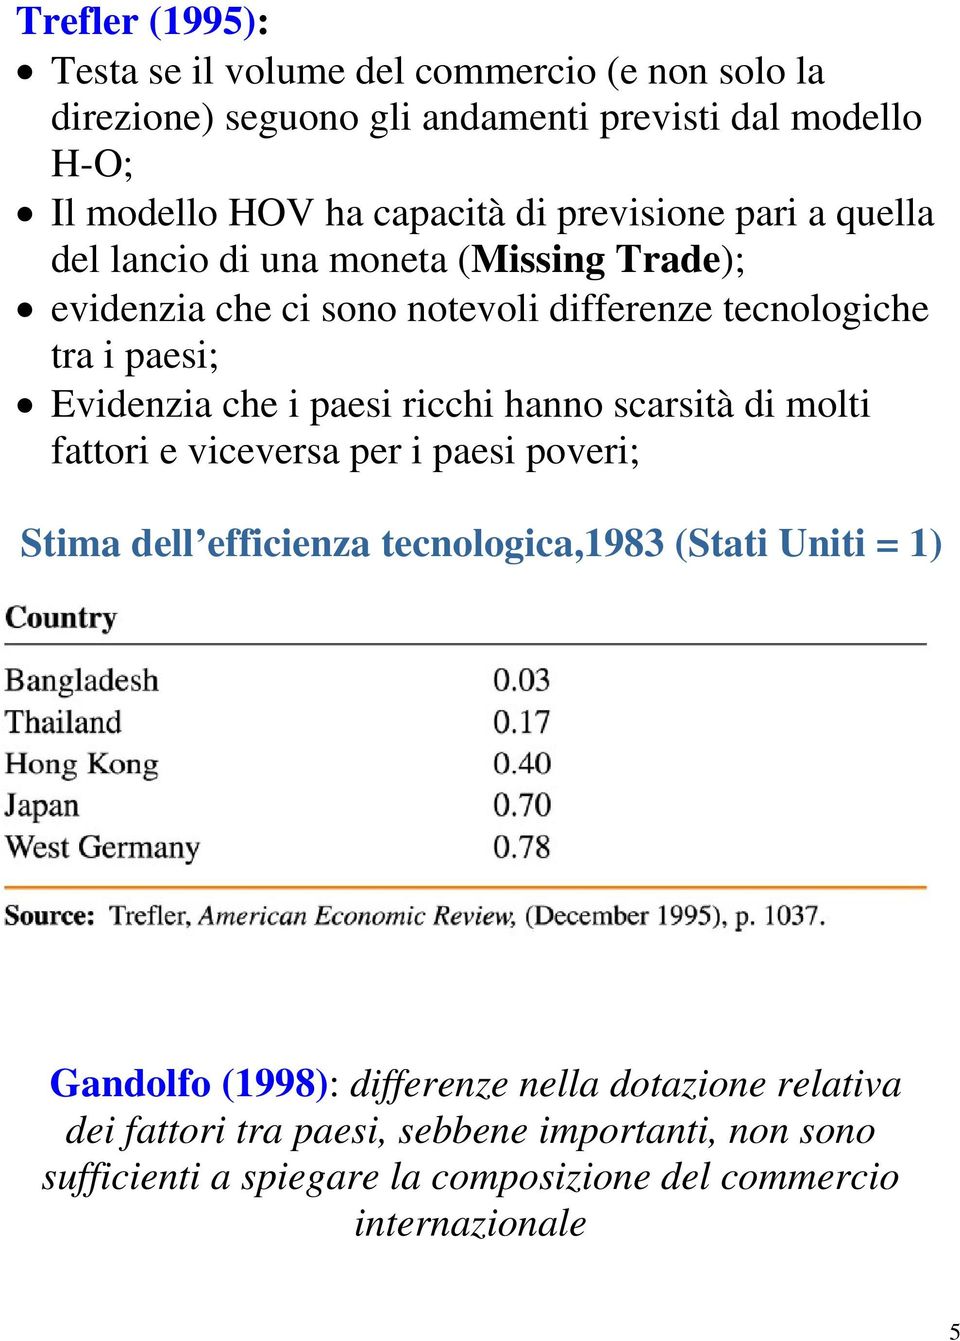 paesi ricchi hanno scarsità di molti fattori e viceversa per i paesi poveri; Stima dell efficienza tecnologica,1983 (Stati Uniti = 1) Gandolfo (1998):